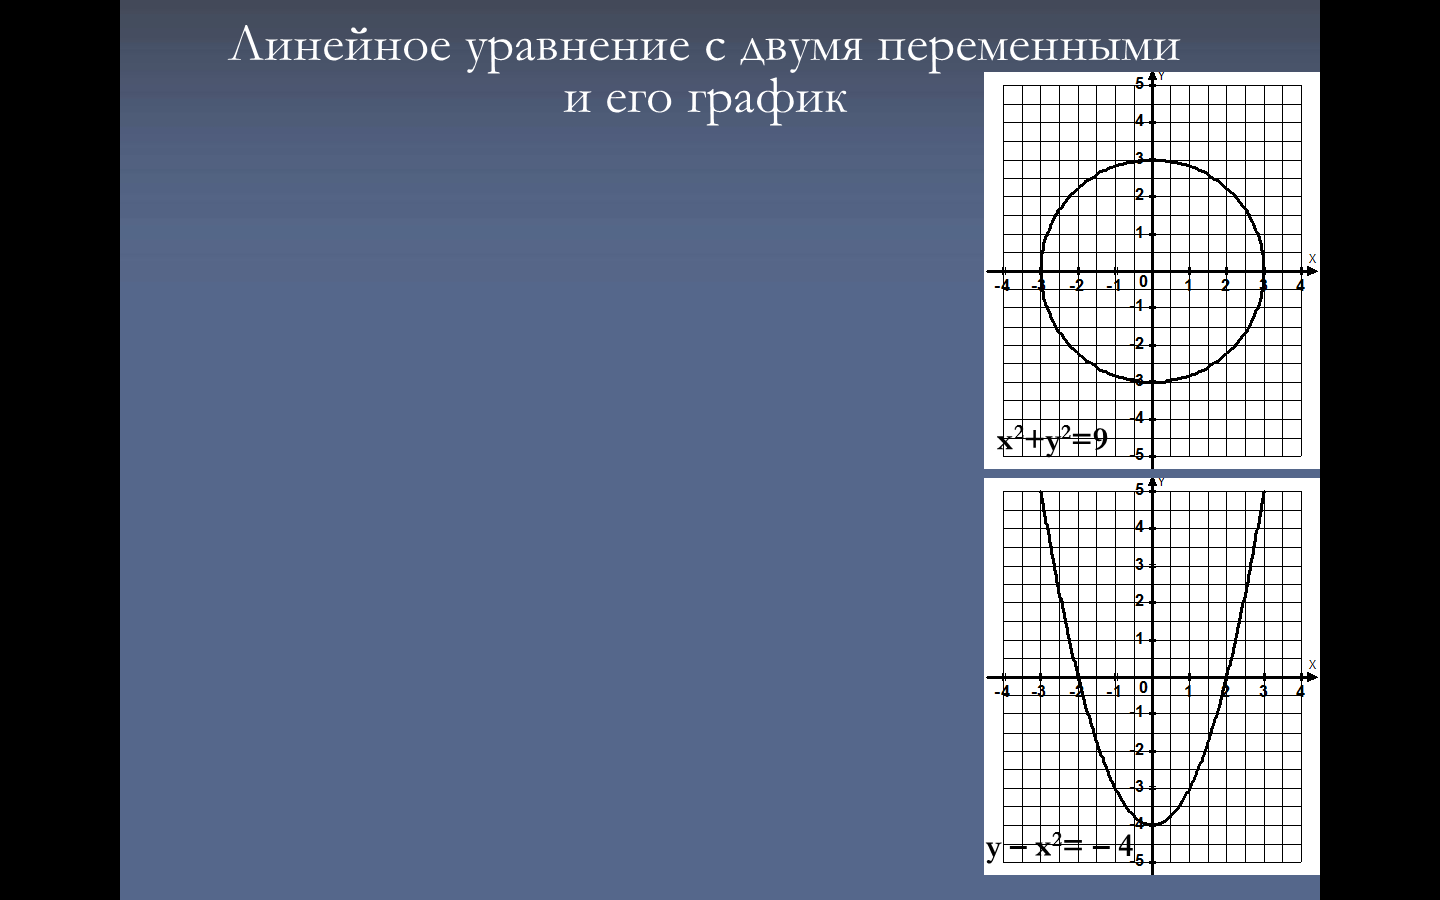 ПЛАН-КОНСПЕКТ УРОКА График линейного уравнения с двумя переменными